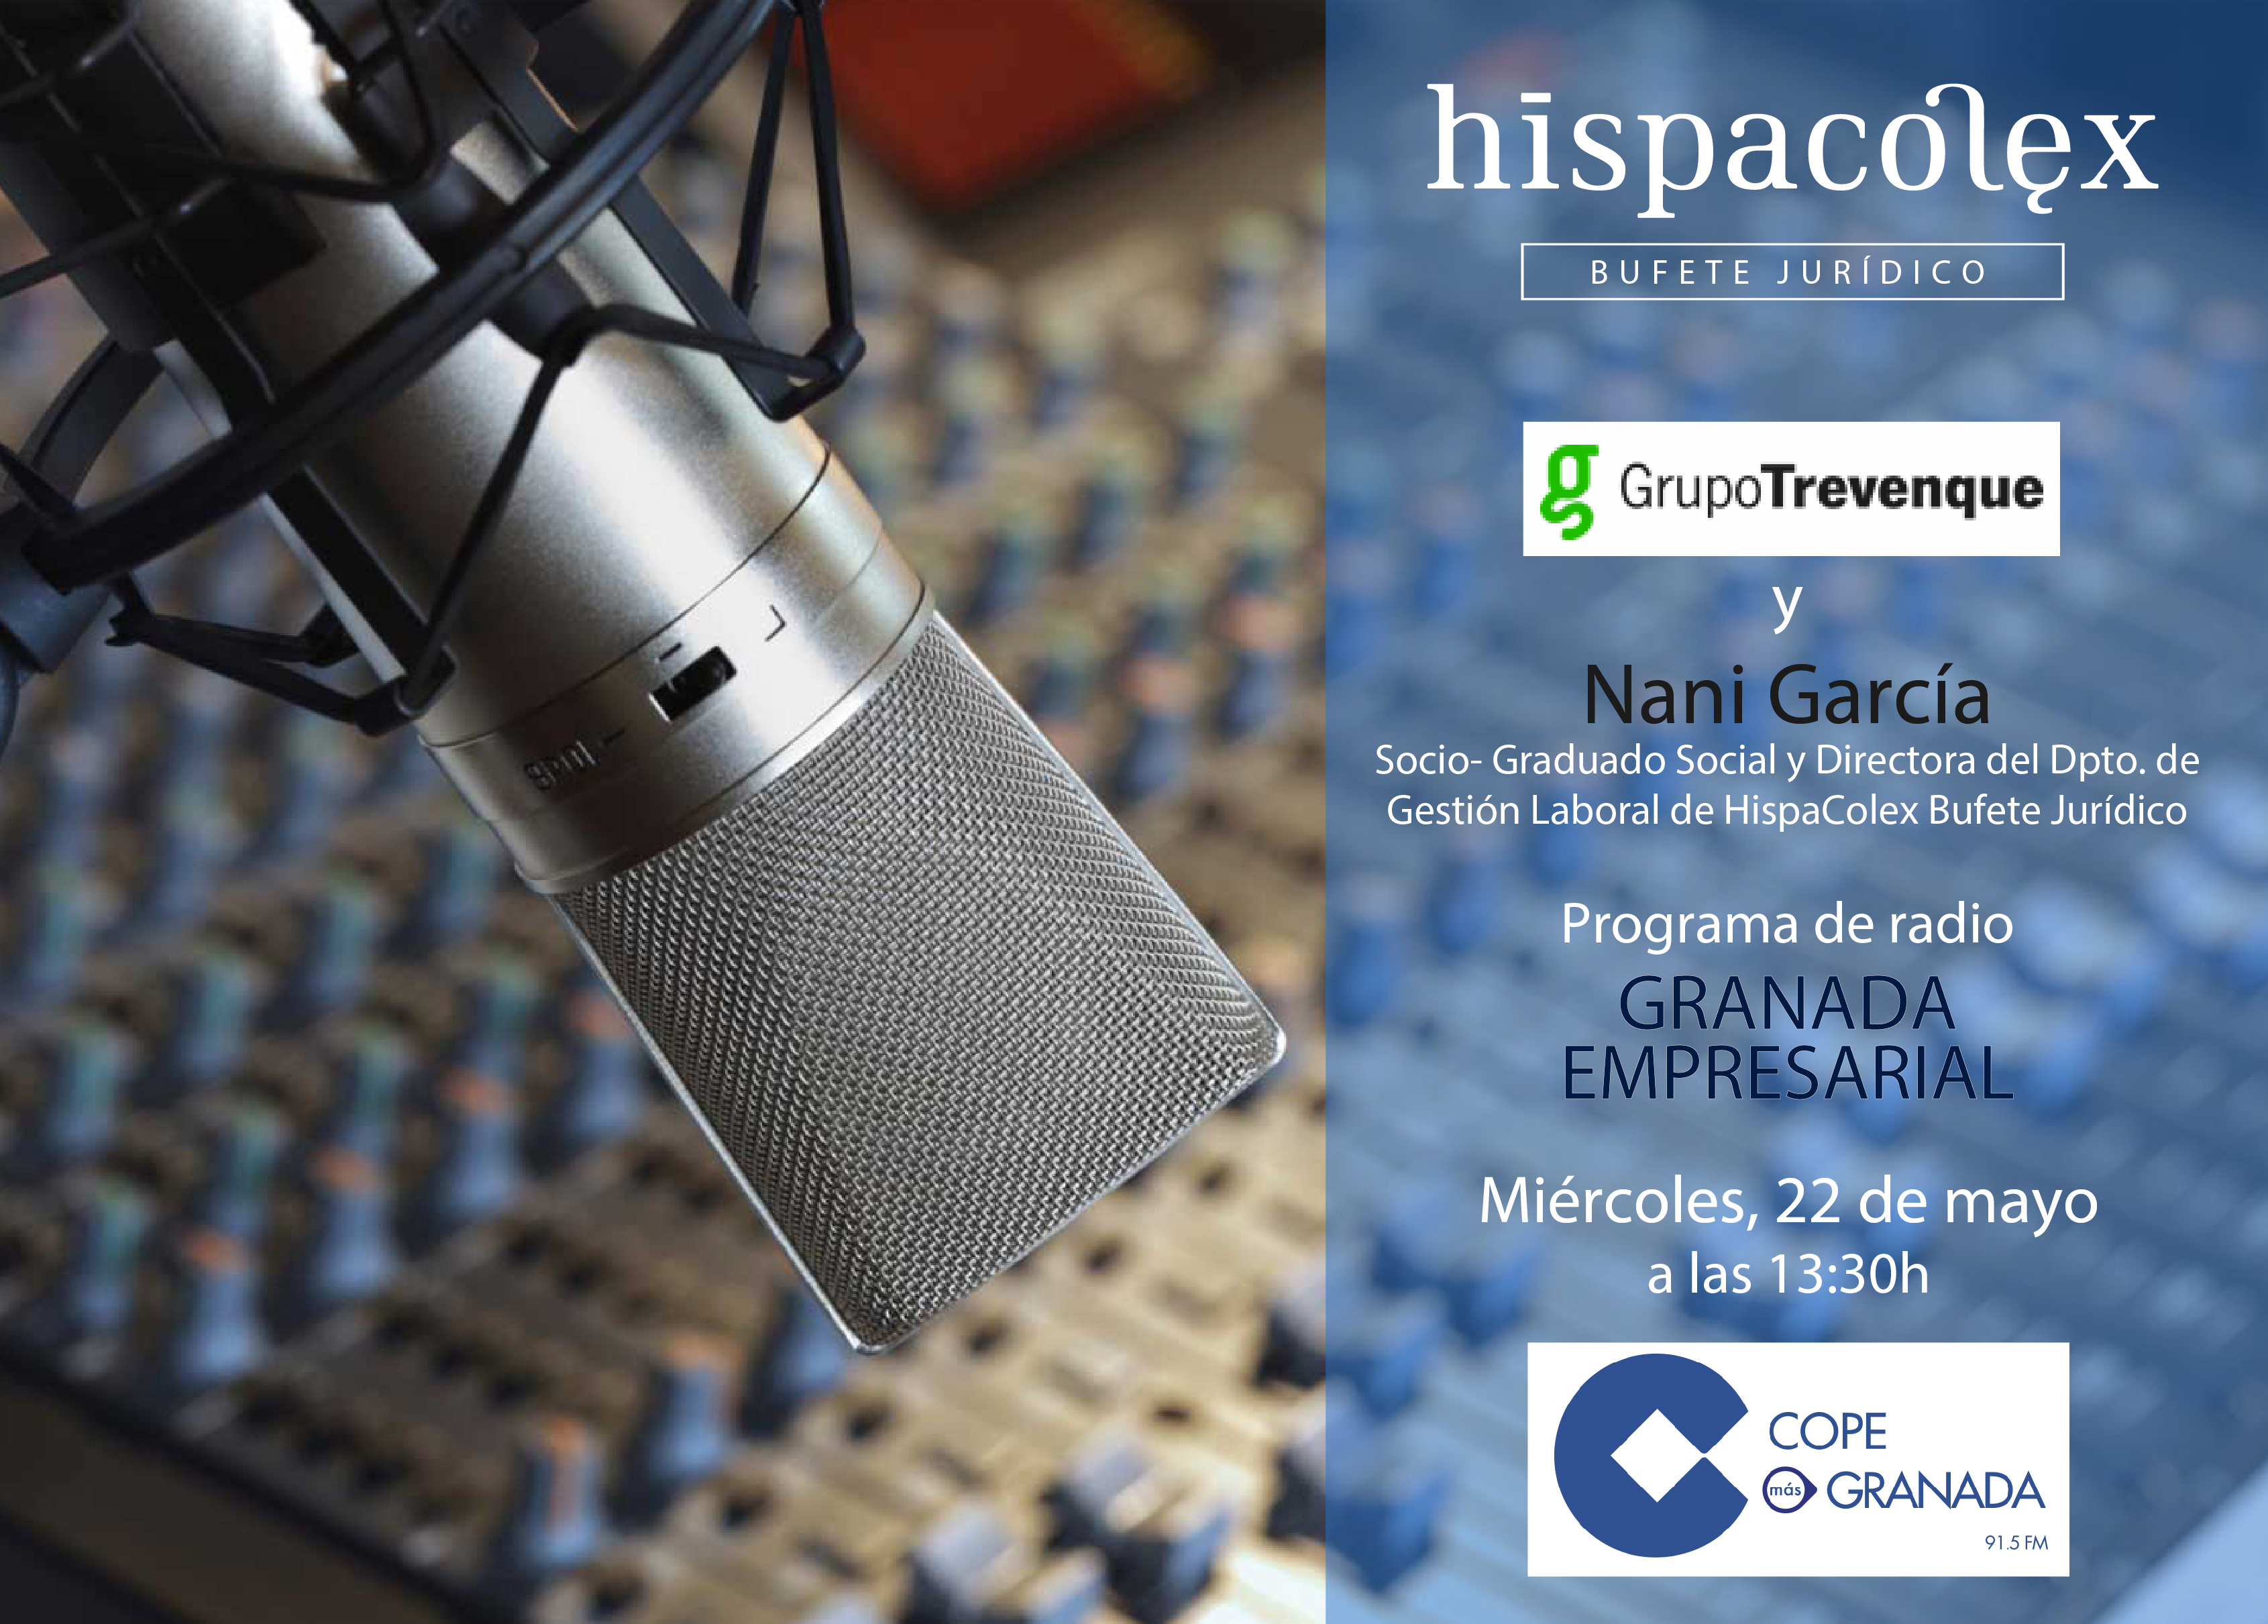 Imagen del audio Granada Empresarial: Entrevista a José María Prados de Grupo Trevenque y Nani García de HispaColex